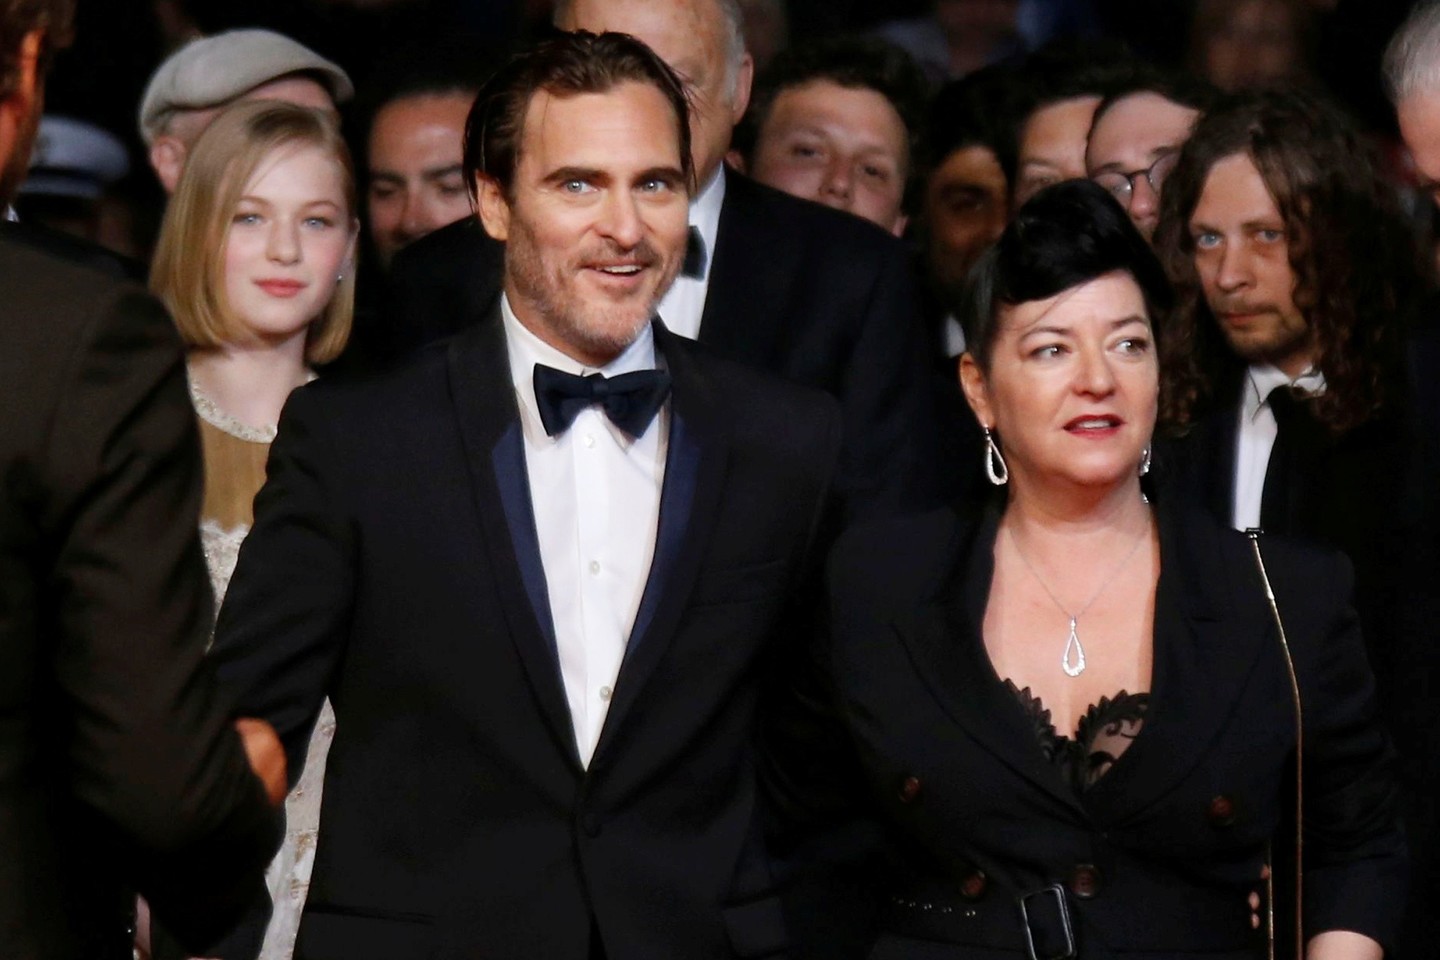  Pretendentai į Kanų kino festivalio apdovanojimus - režisierė L.Ramsay ir aktorius J. Phoenixas.  <br> Reuters nuotr.